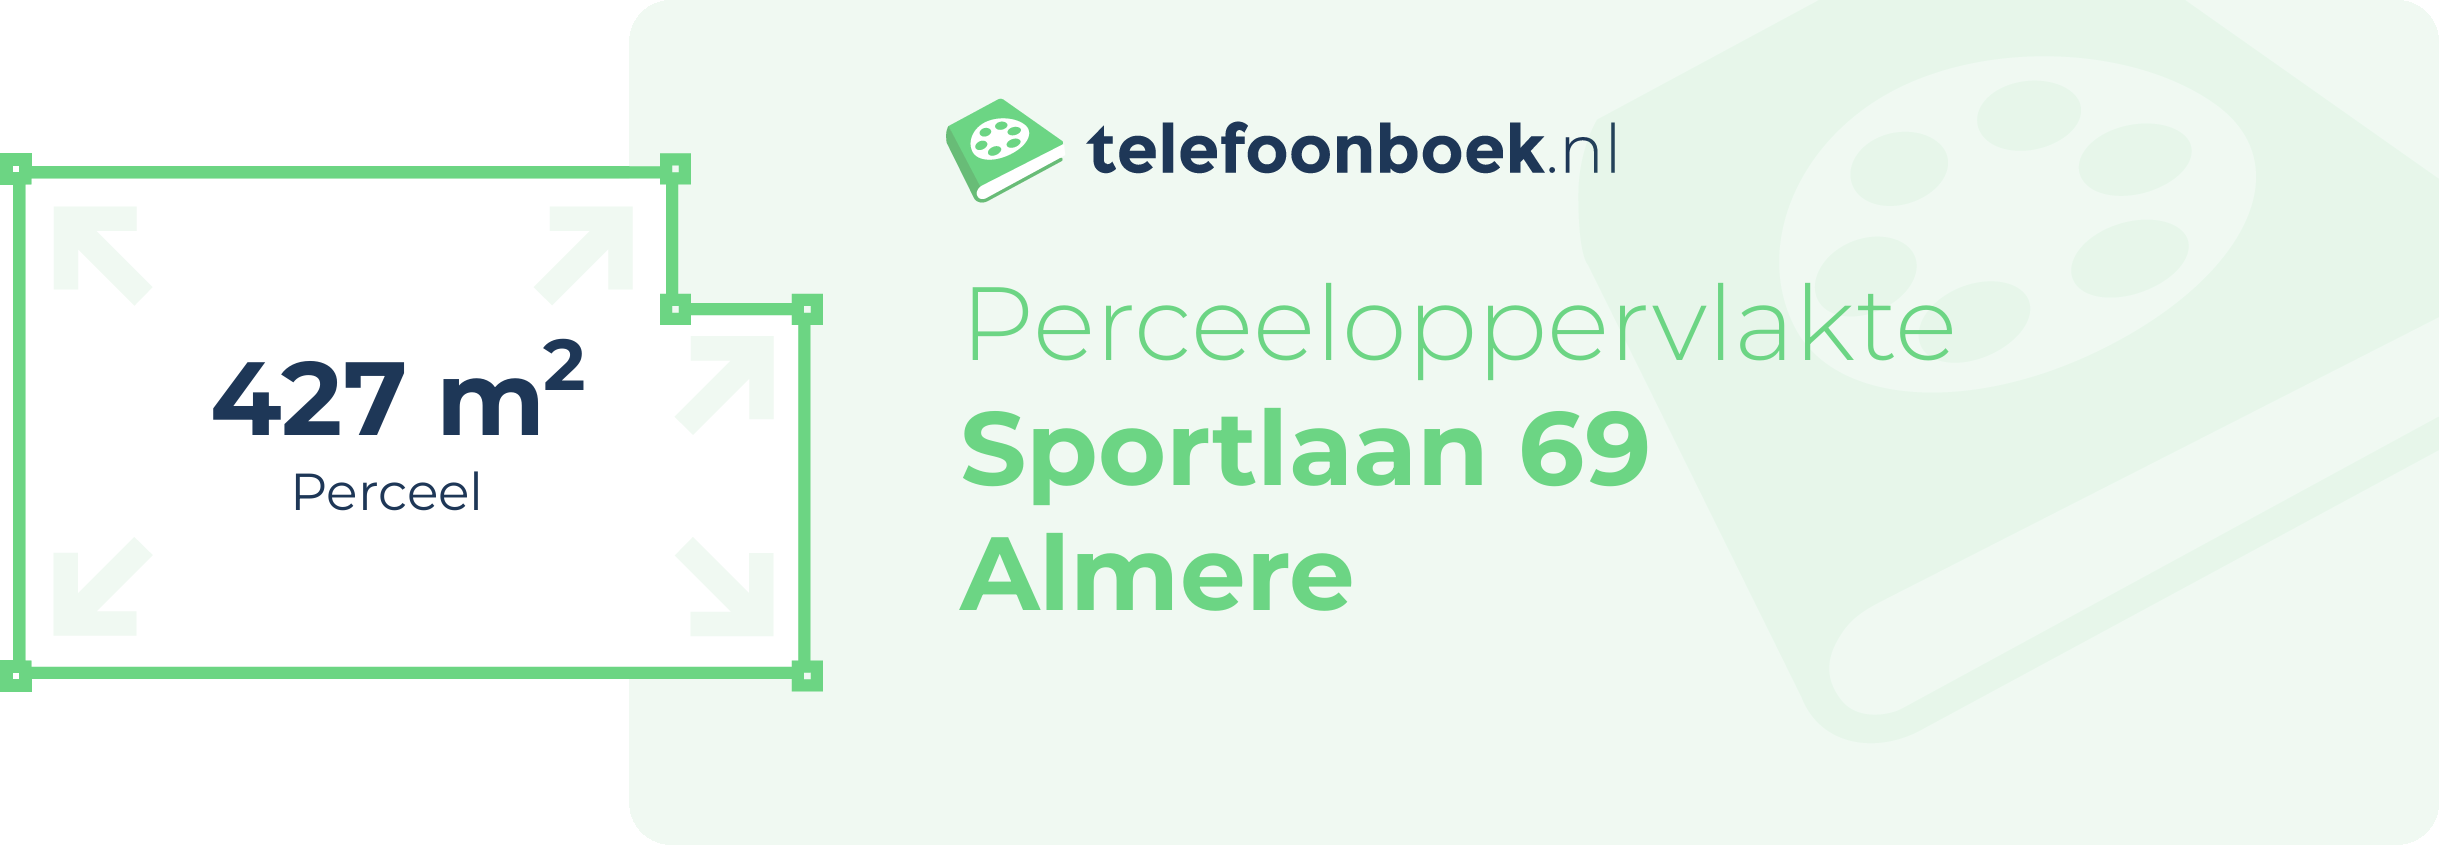 Perceeloppervlakte Sportlaan 69 Almere